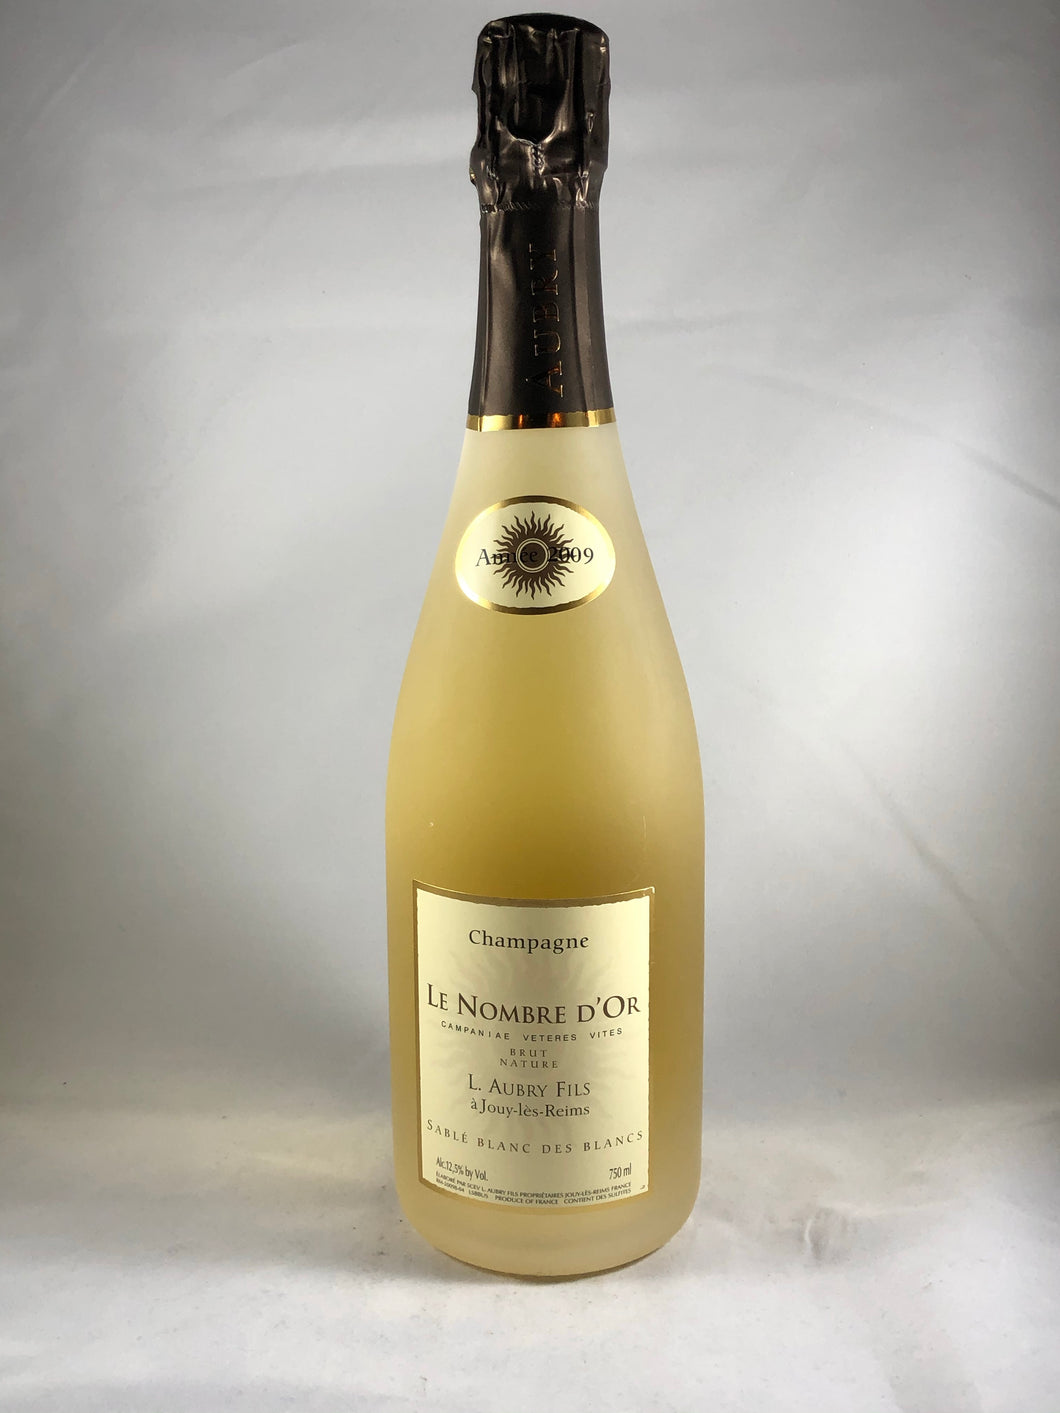 L. Aubry Fils Le Nombre D’Or Champagne Sablé Blanc Des Blancs 2009, France